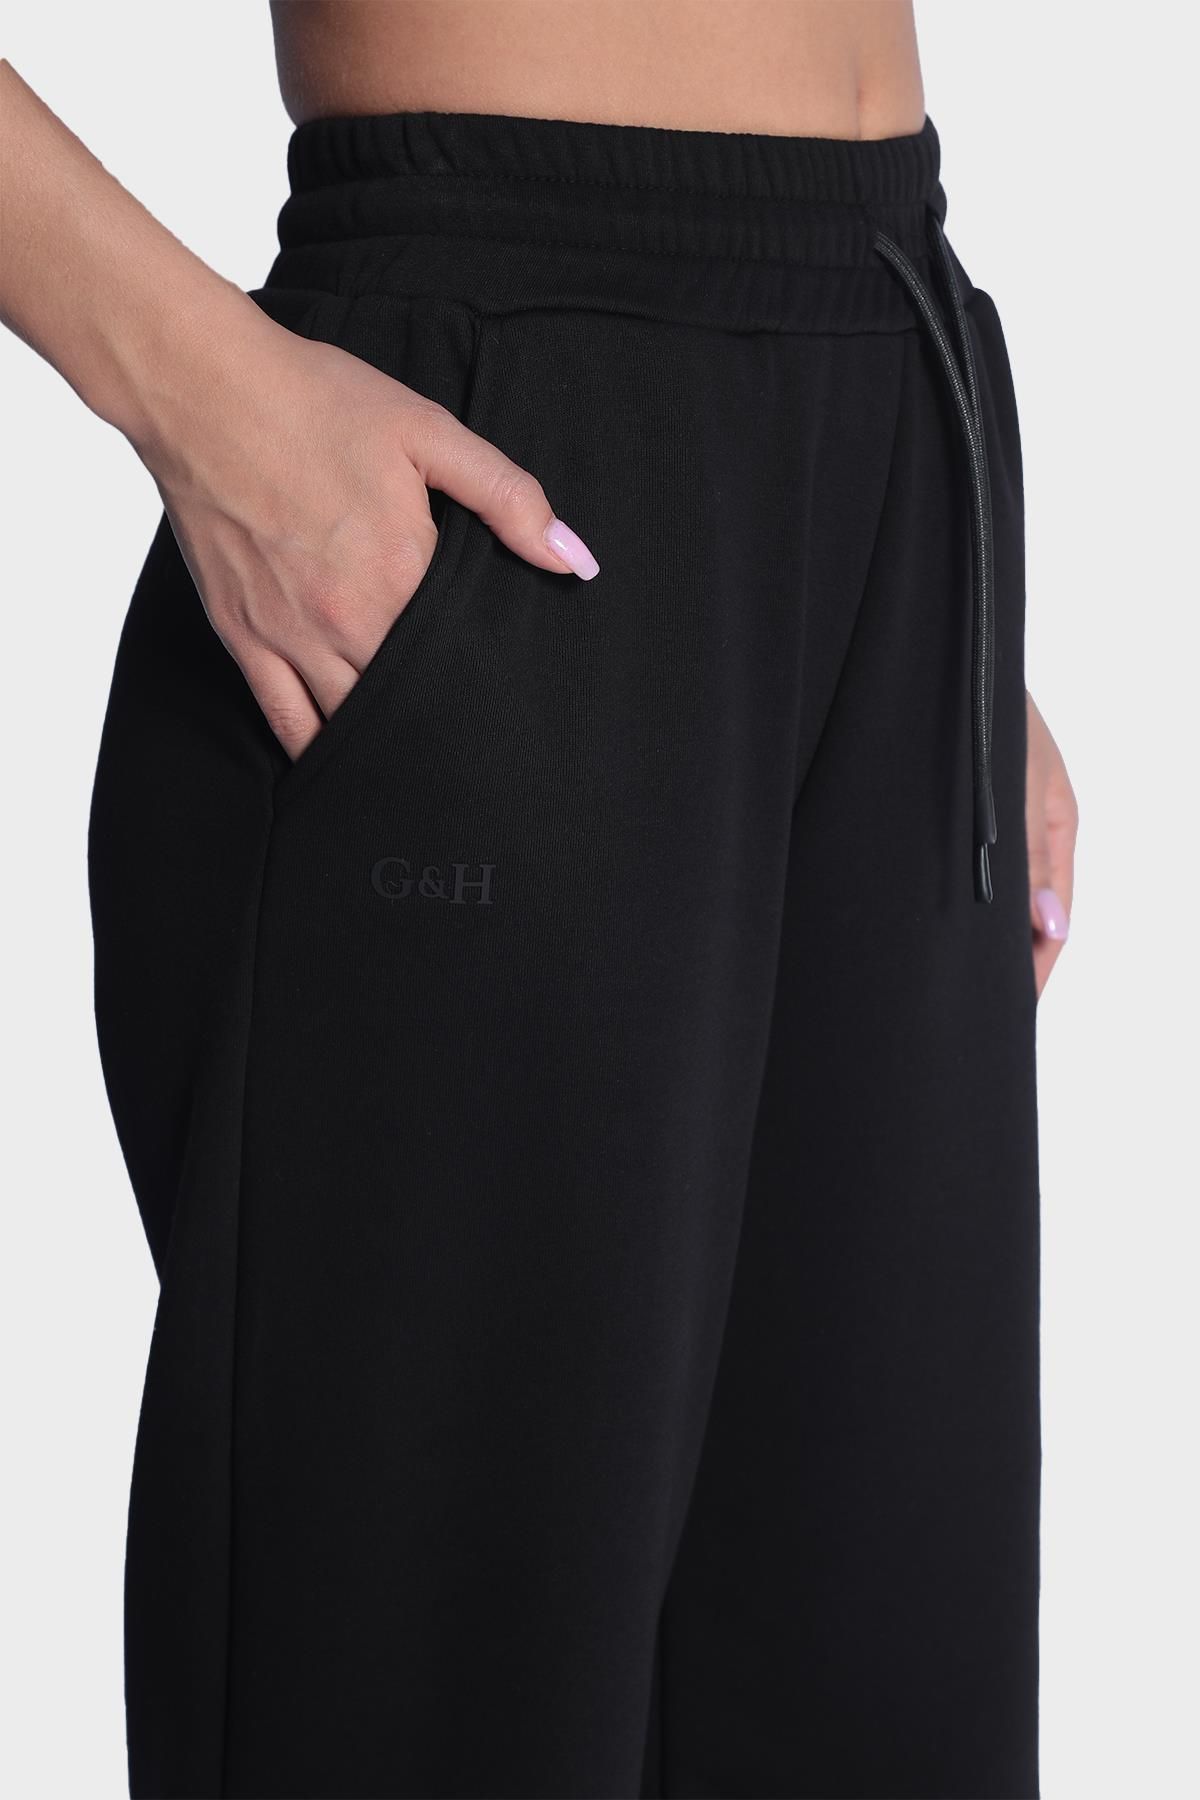 Женские широкие спортивные штаны с эластичной талией - Черный